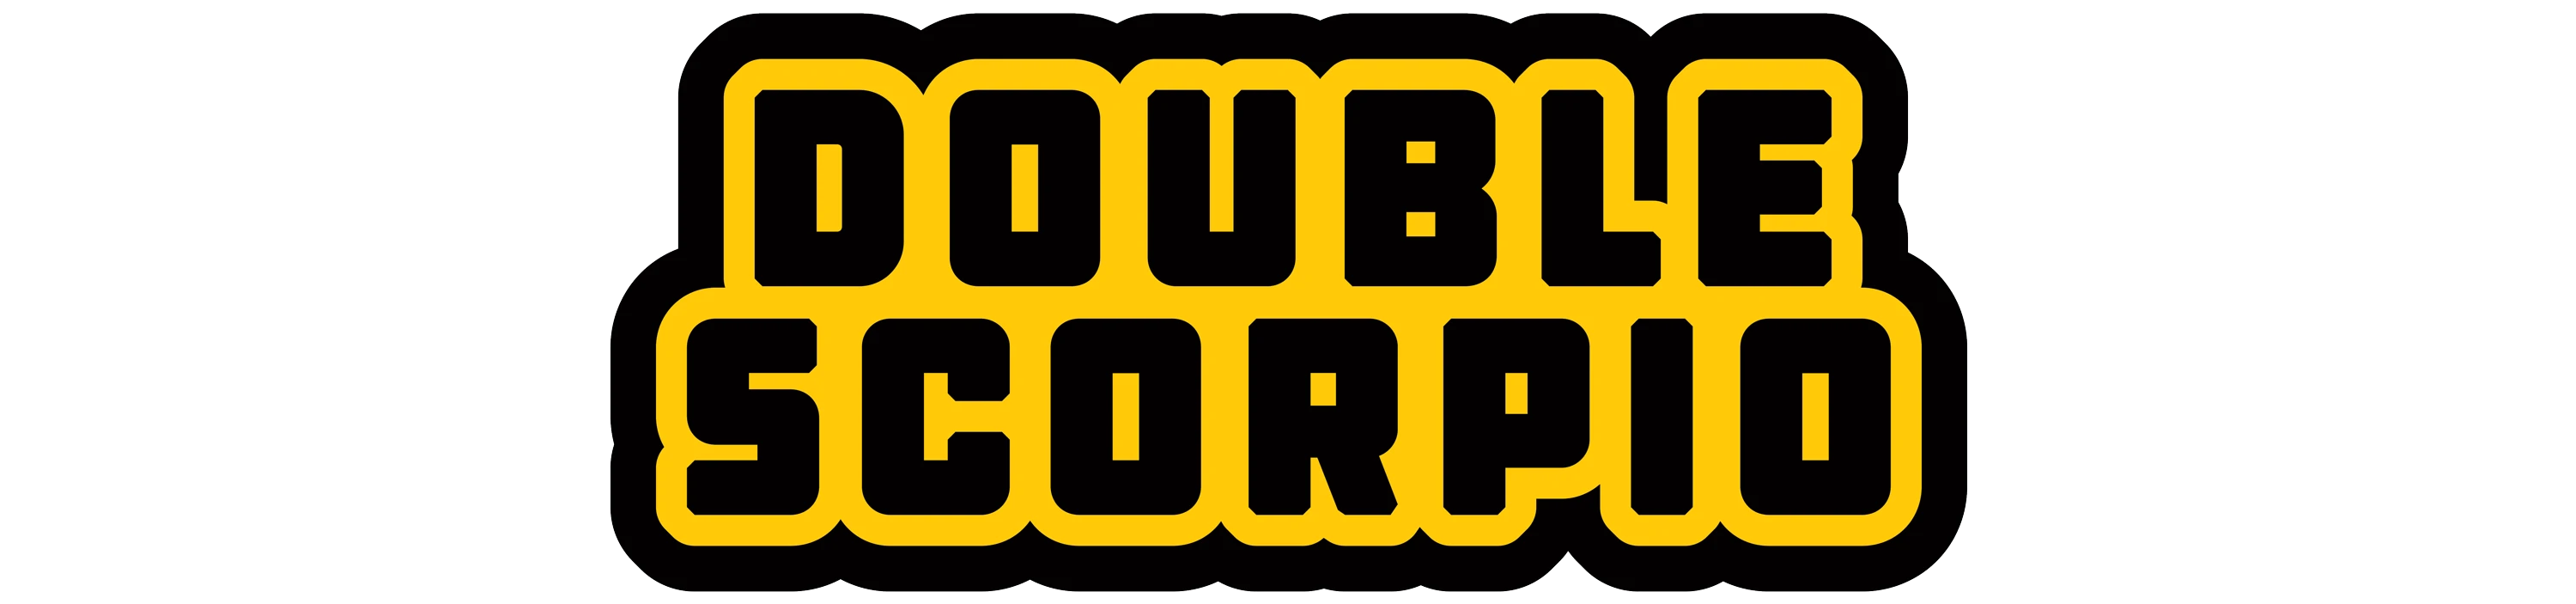  Double Scorpio 쿠폰 코드